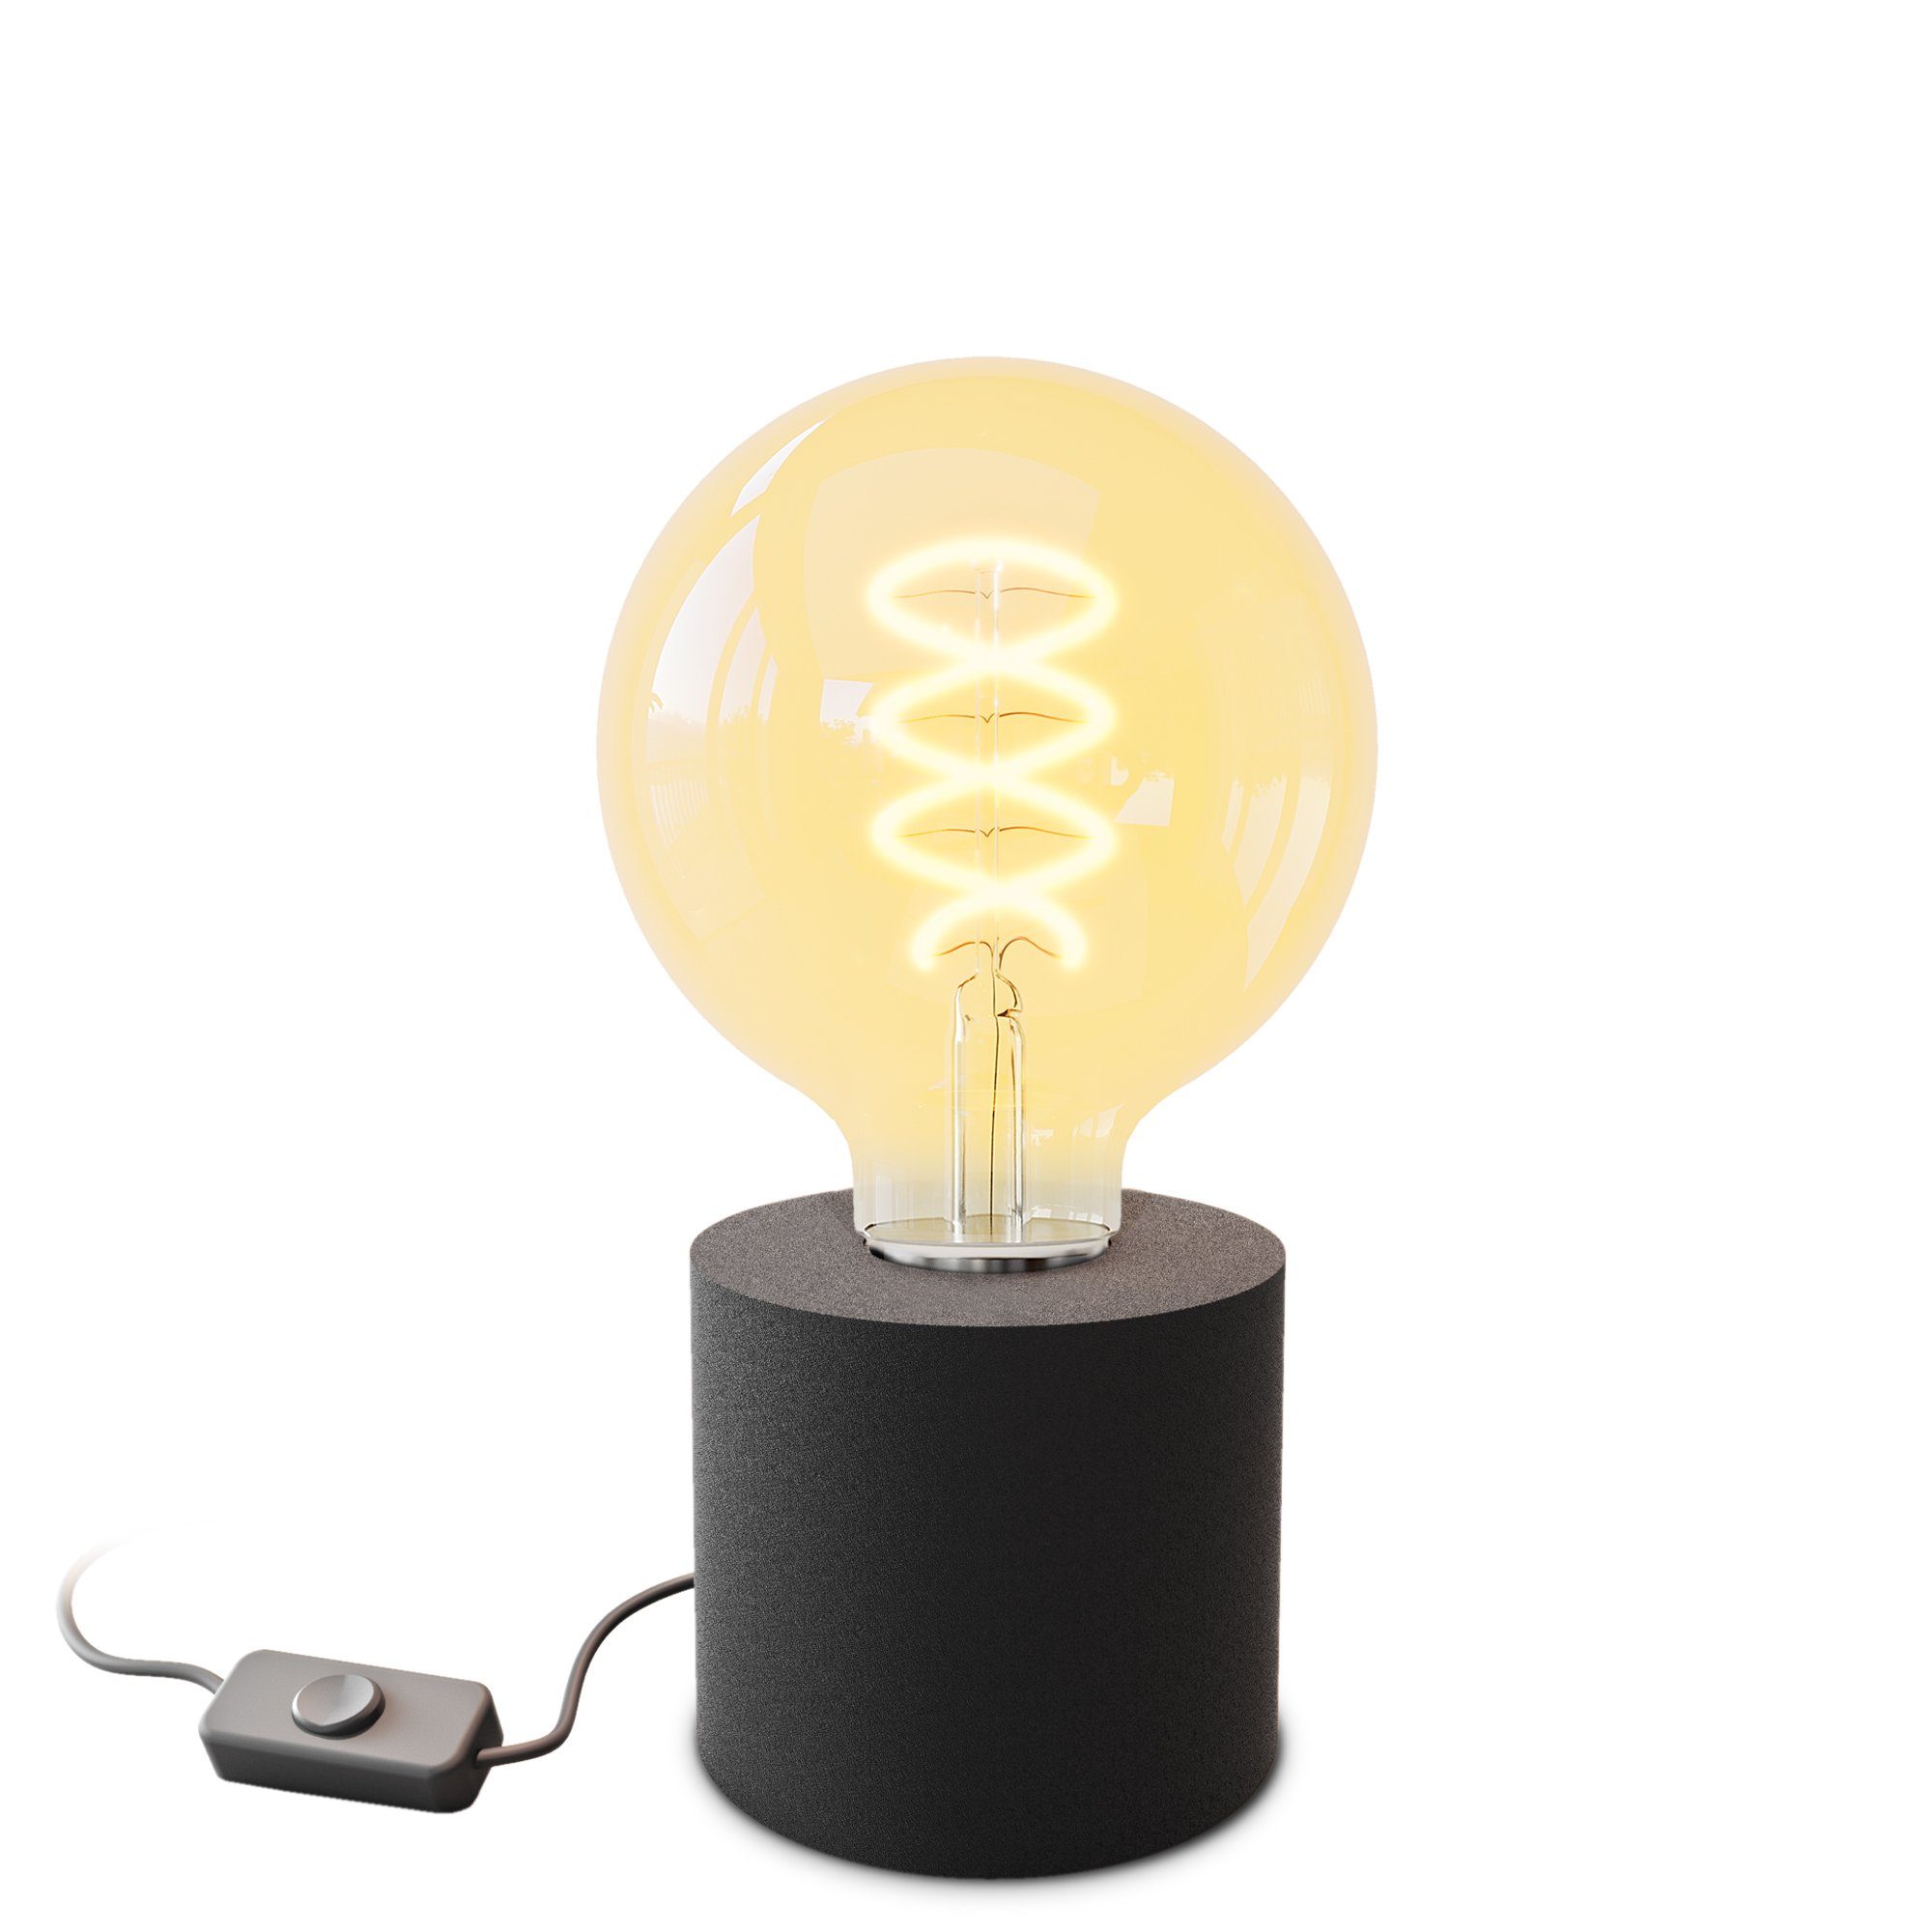 SSC-LUXon LED schwarz Tischlampe & Steckerkabel mit LED Bilderleuchte E27 Globe, Warmweiß Extra Wand- mit NAMBI